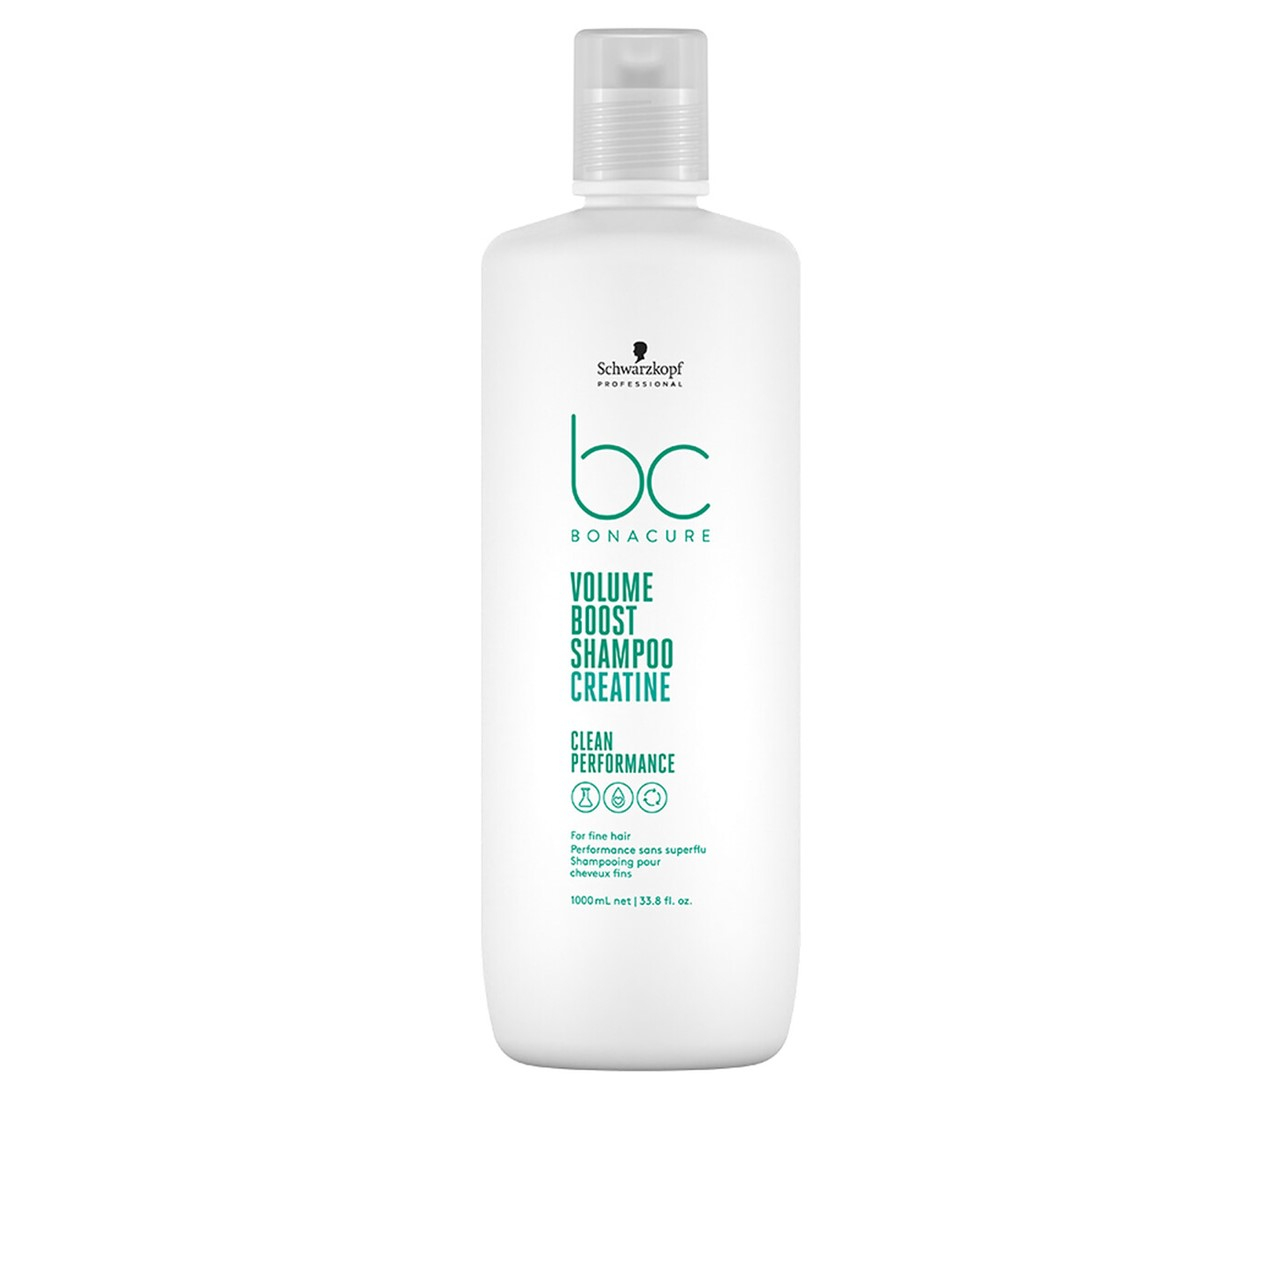 Schwarzkopf BC Volume Boost Creatine Shampoo 1L